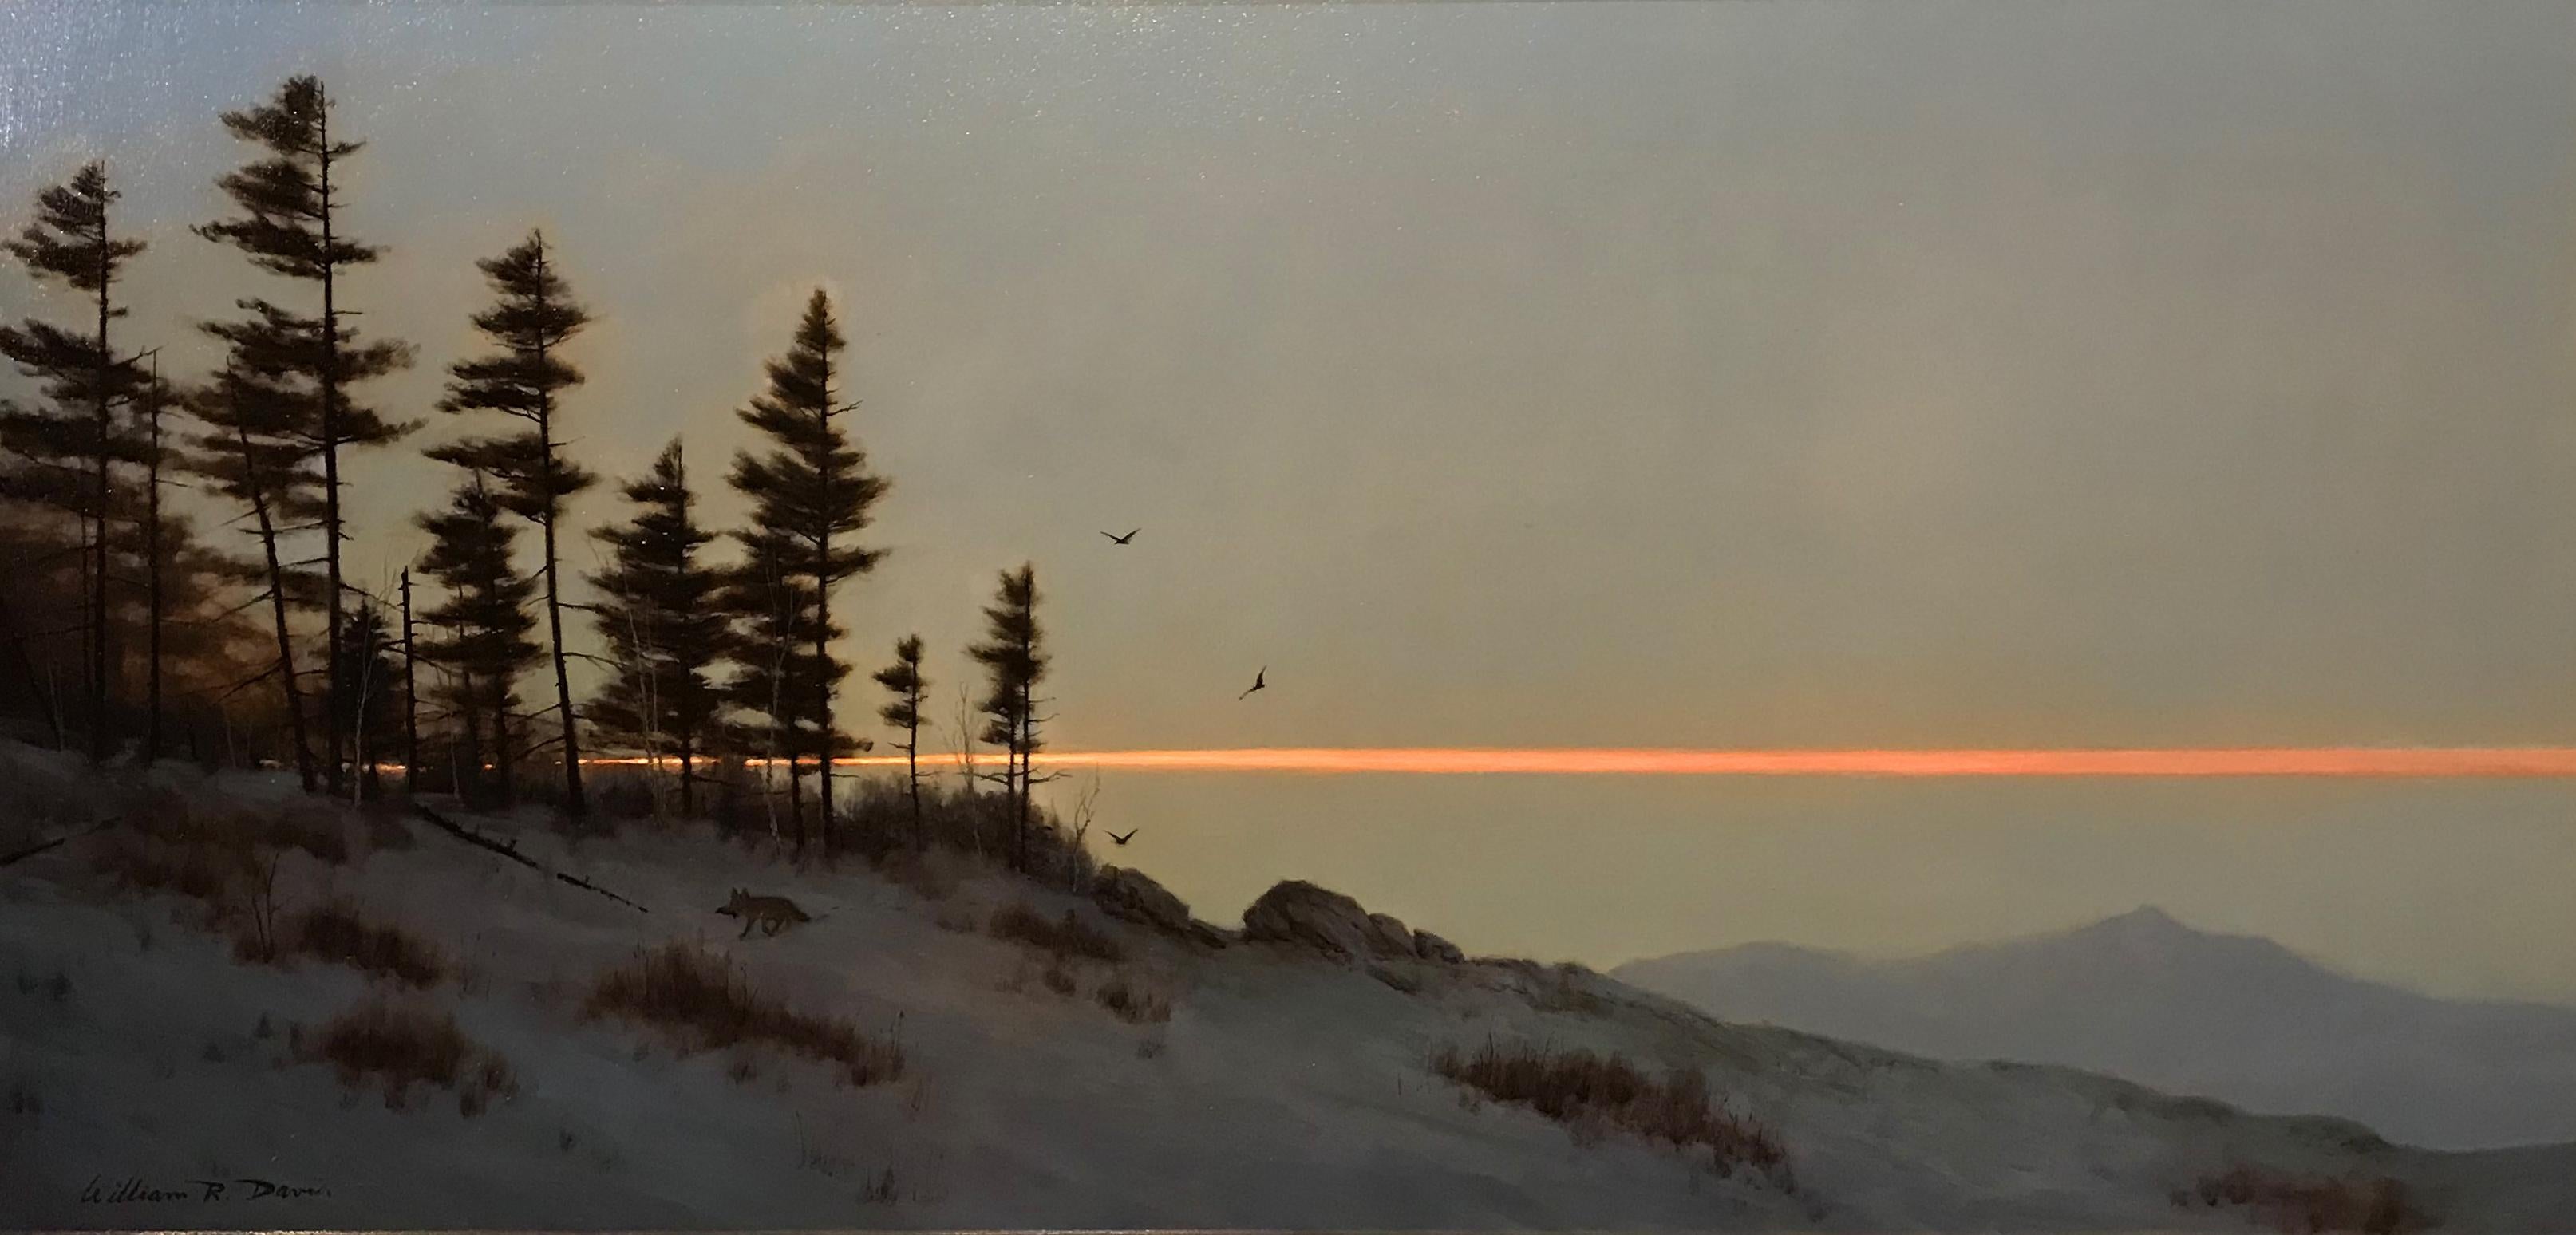 Chocorua bei Twilight – Painting von William R. Davis